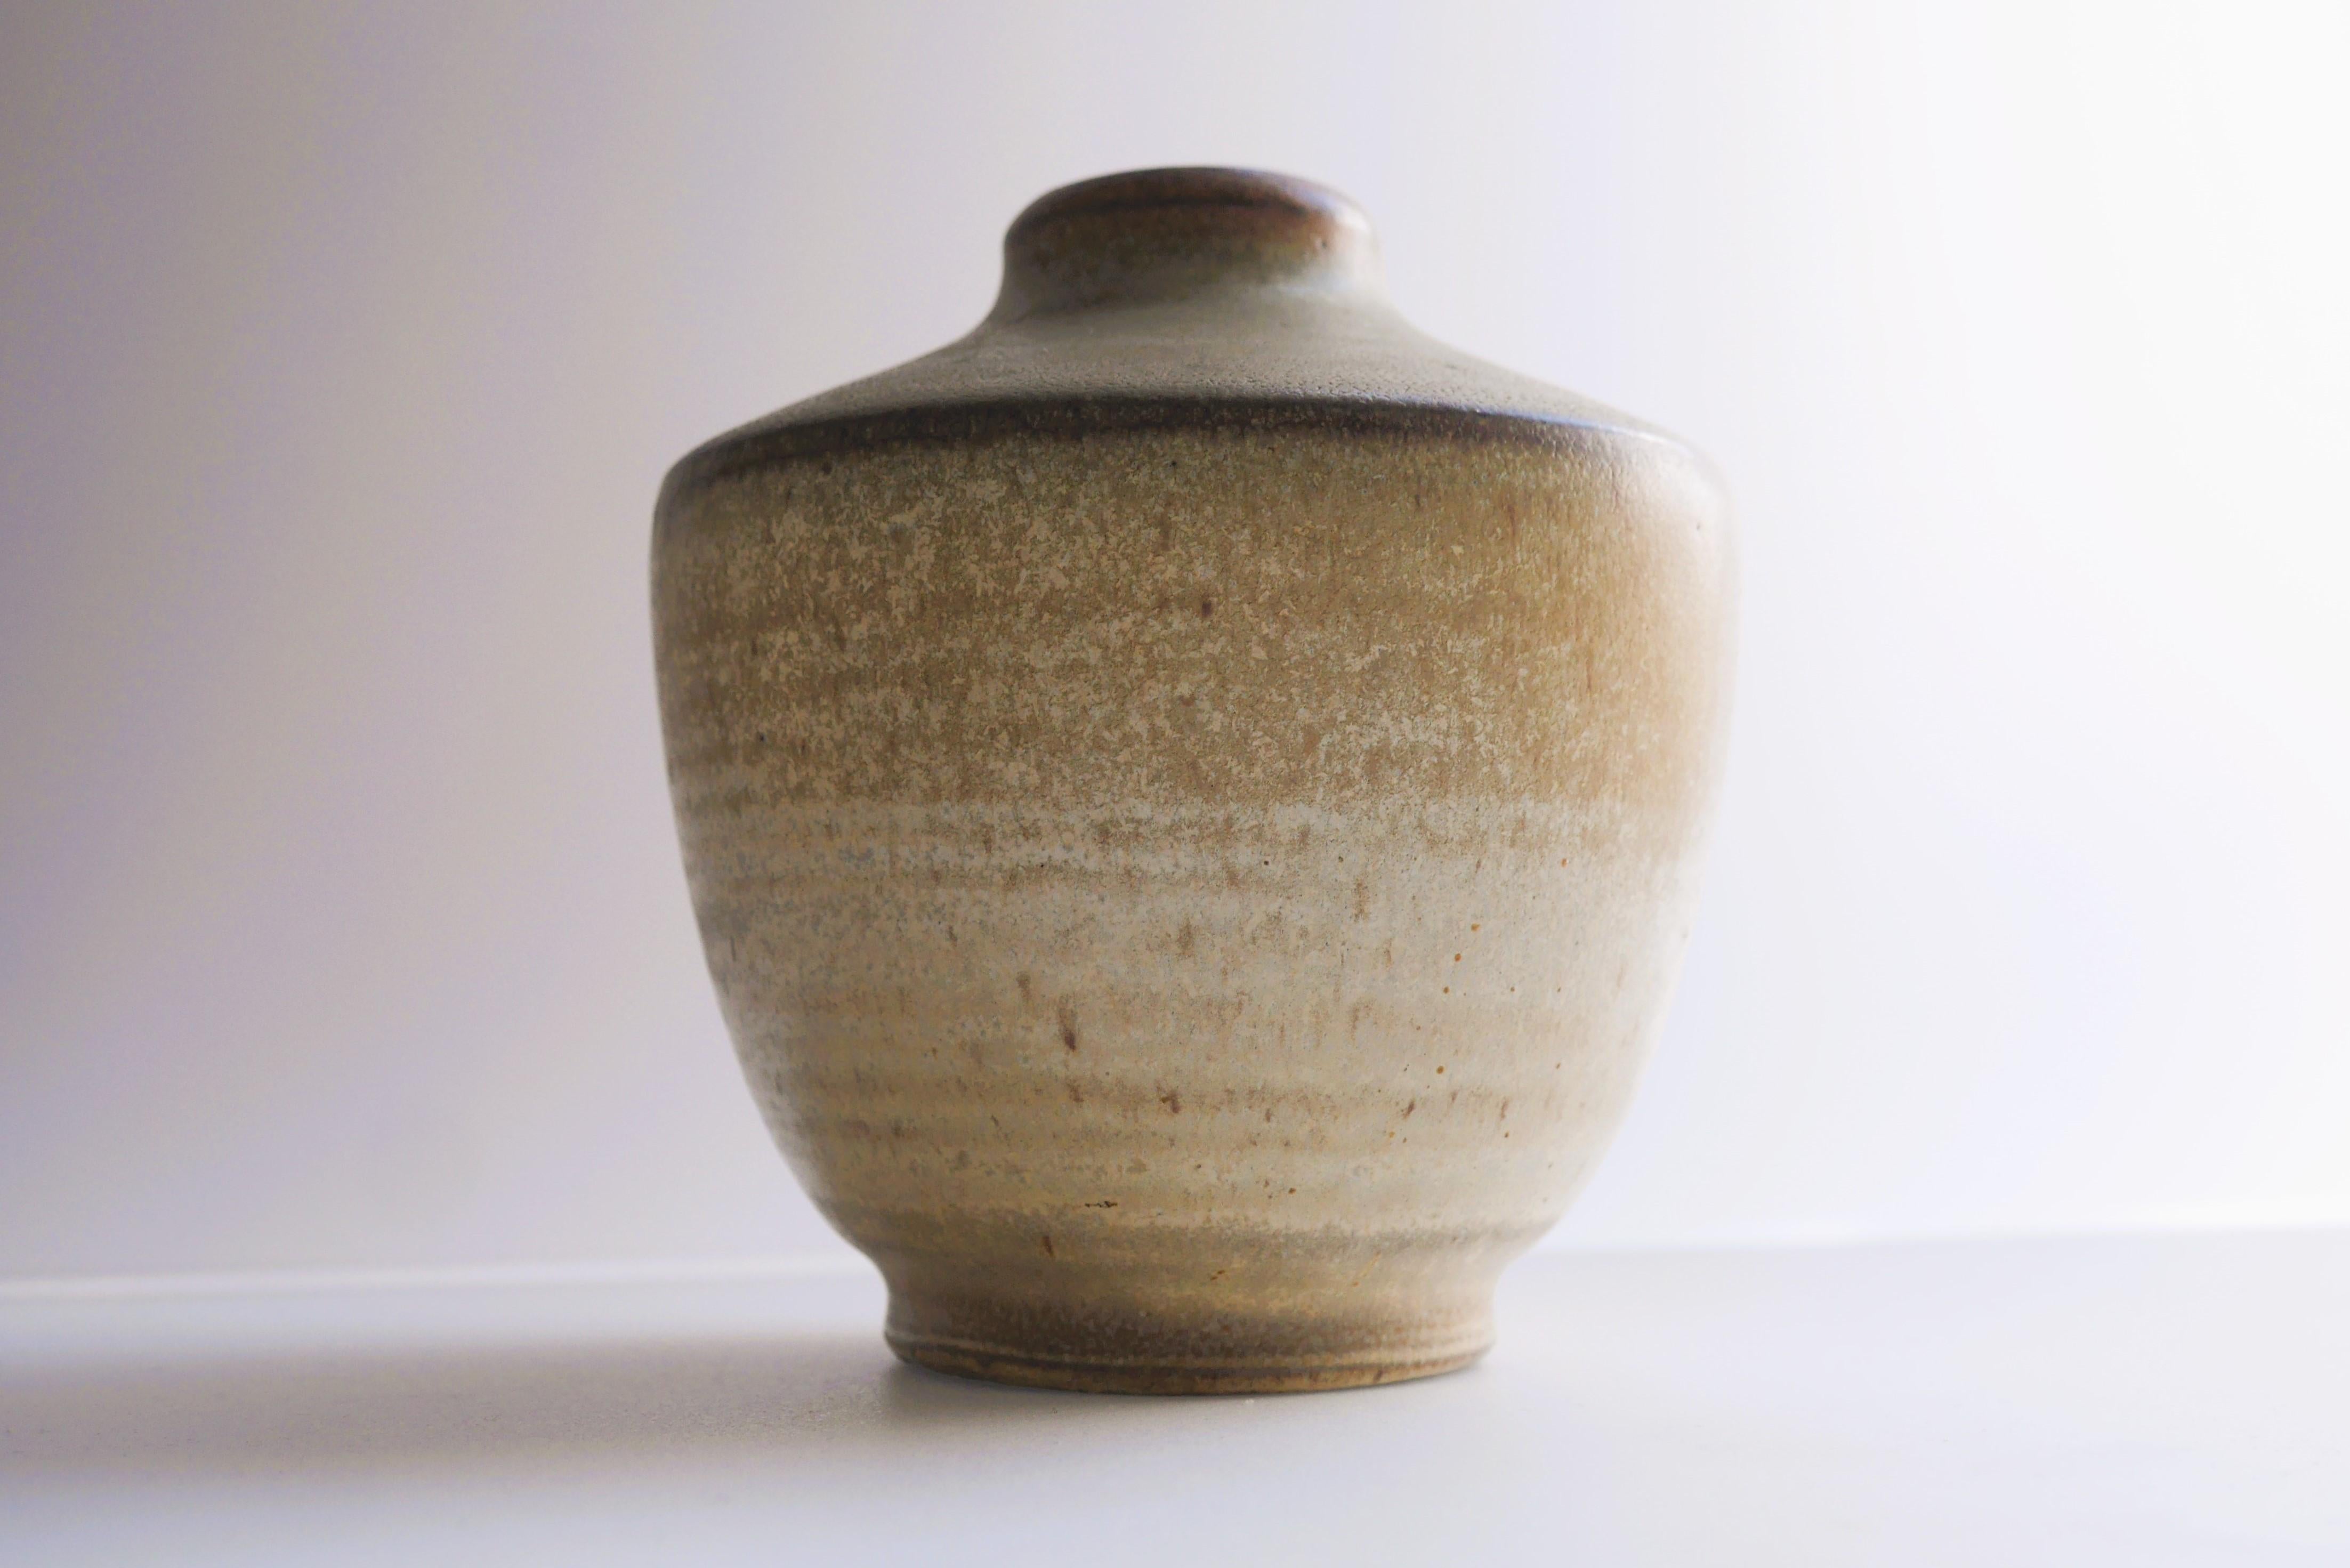 Un fantastique vase vintage en céramique, fait et dessiné à la main par Arthur Andersson, pour Wallåkra Keramik, Suède. Le vase a une belle couleur, un brun pâle ou beige, avec des touches de moutarde, un glaçage simple mais efficace, avec un effet